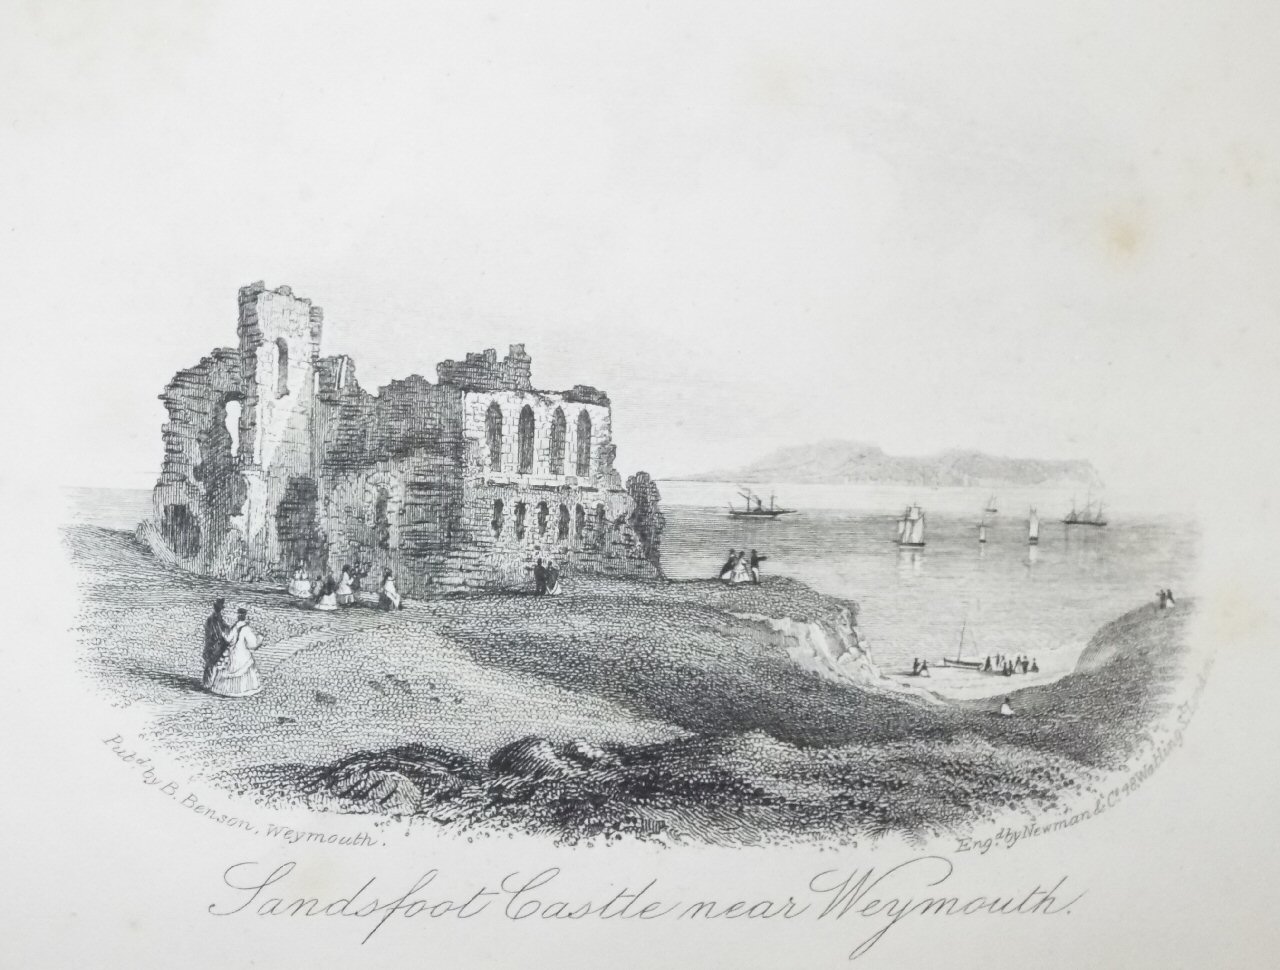 Steel Vignette - Sandsfoot Castle, near Weymouth. - Newman